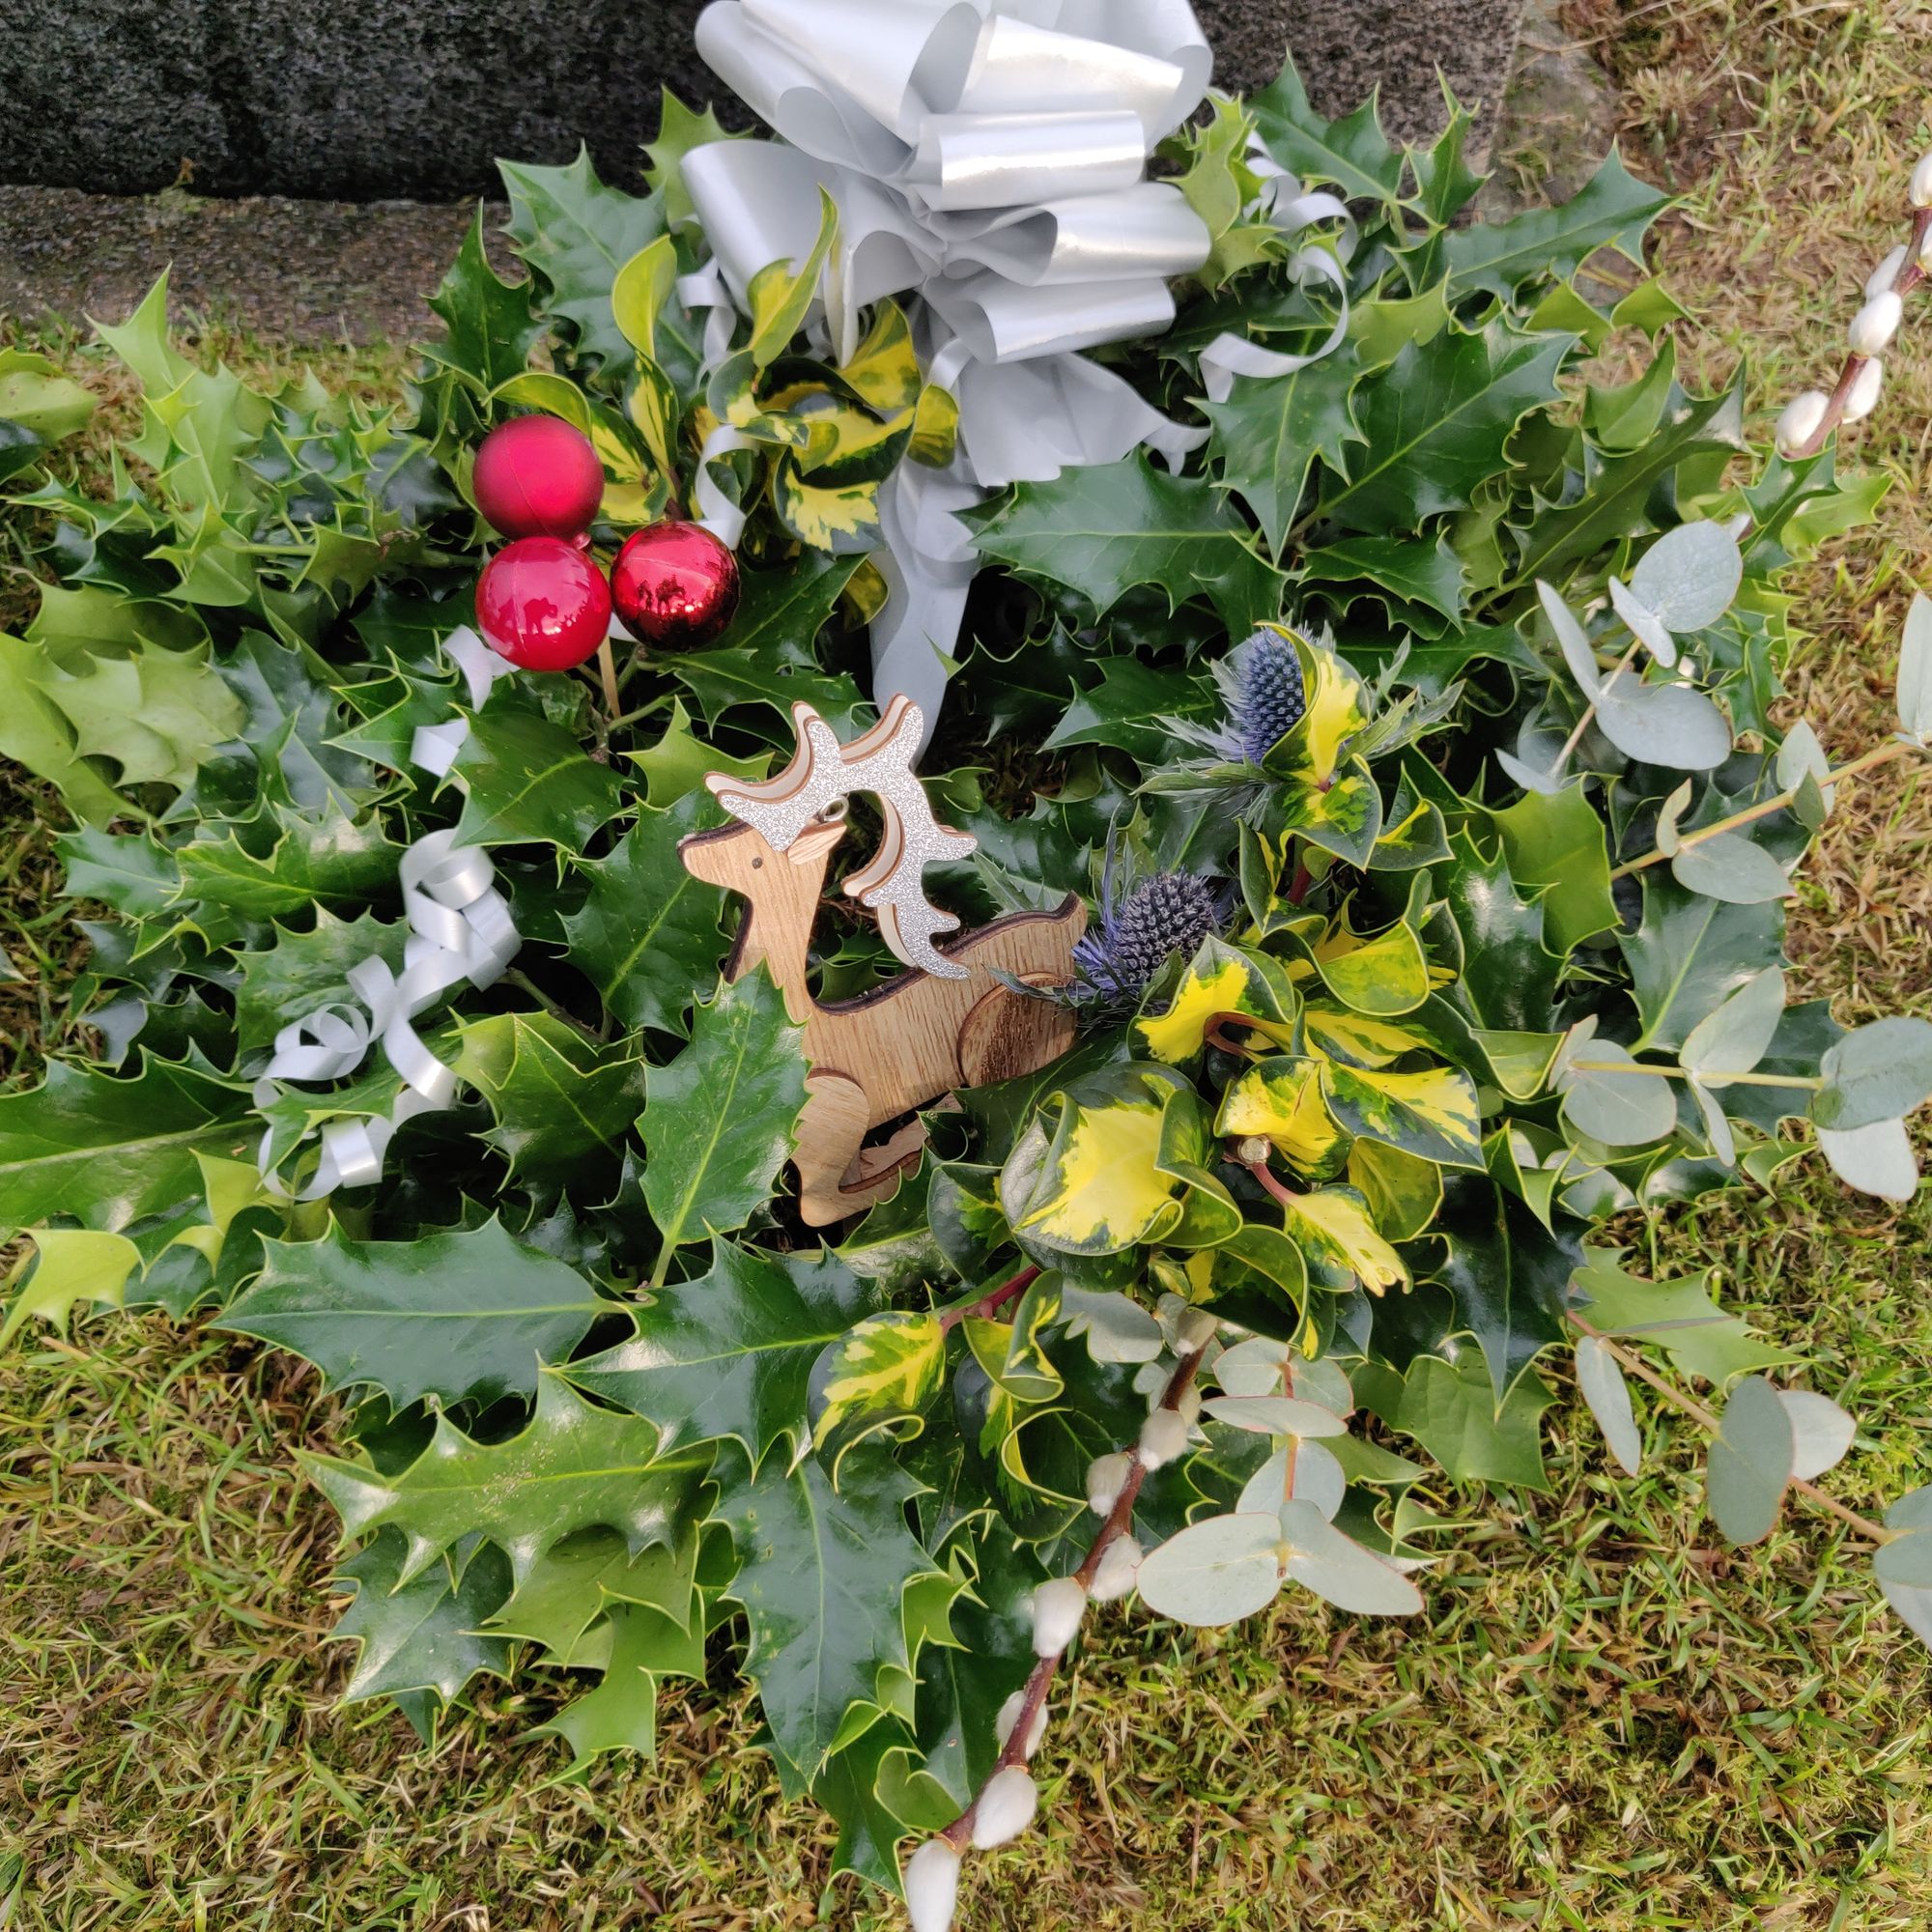 Christmas Wreaths in Memory of Loved Ones ...